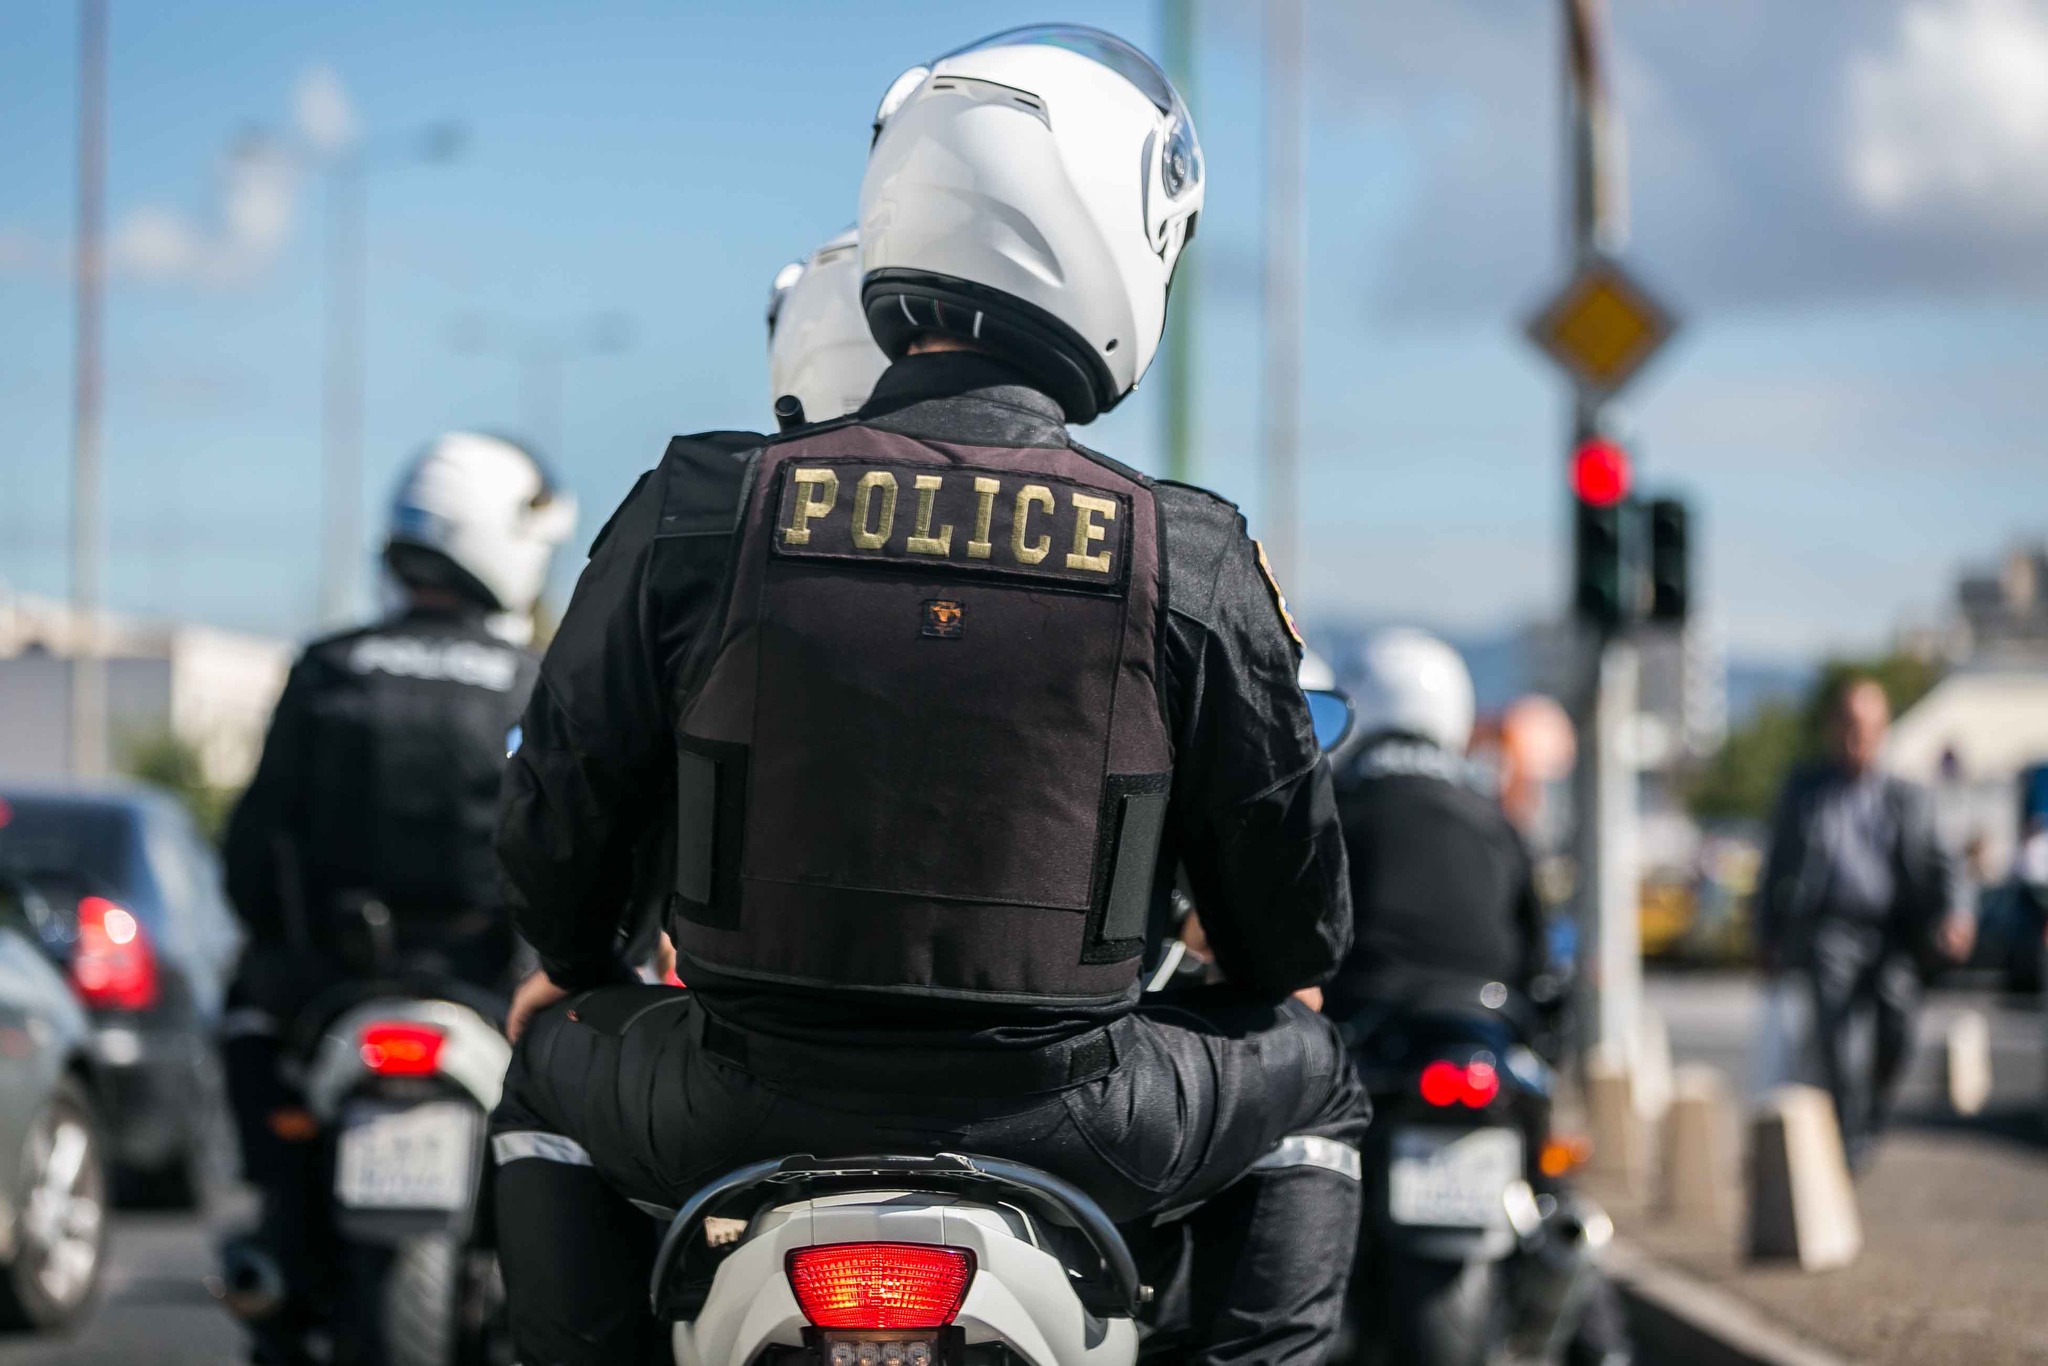 Ελληνική Αστυνομία – εξάρθρωση εγκληματικής οργάνωσης: 2 συλλήψεις – 7 ταυτοποιήσεις, διέπρατταν ανθρωποκτονίες, εμπρησμούς, εκρήξεις